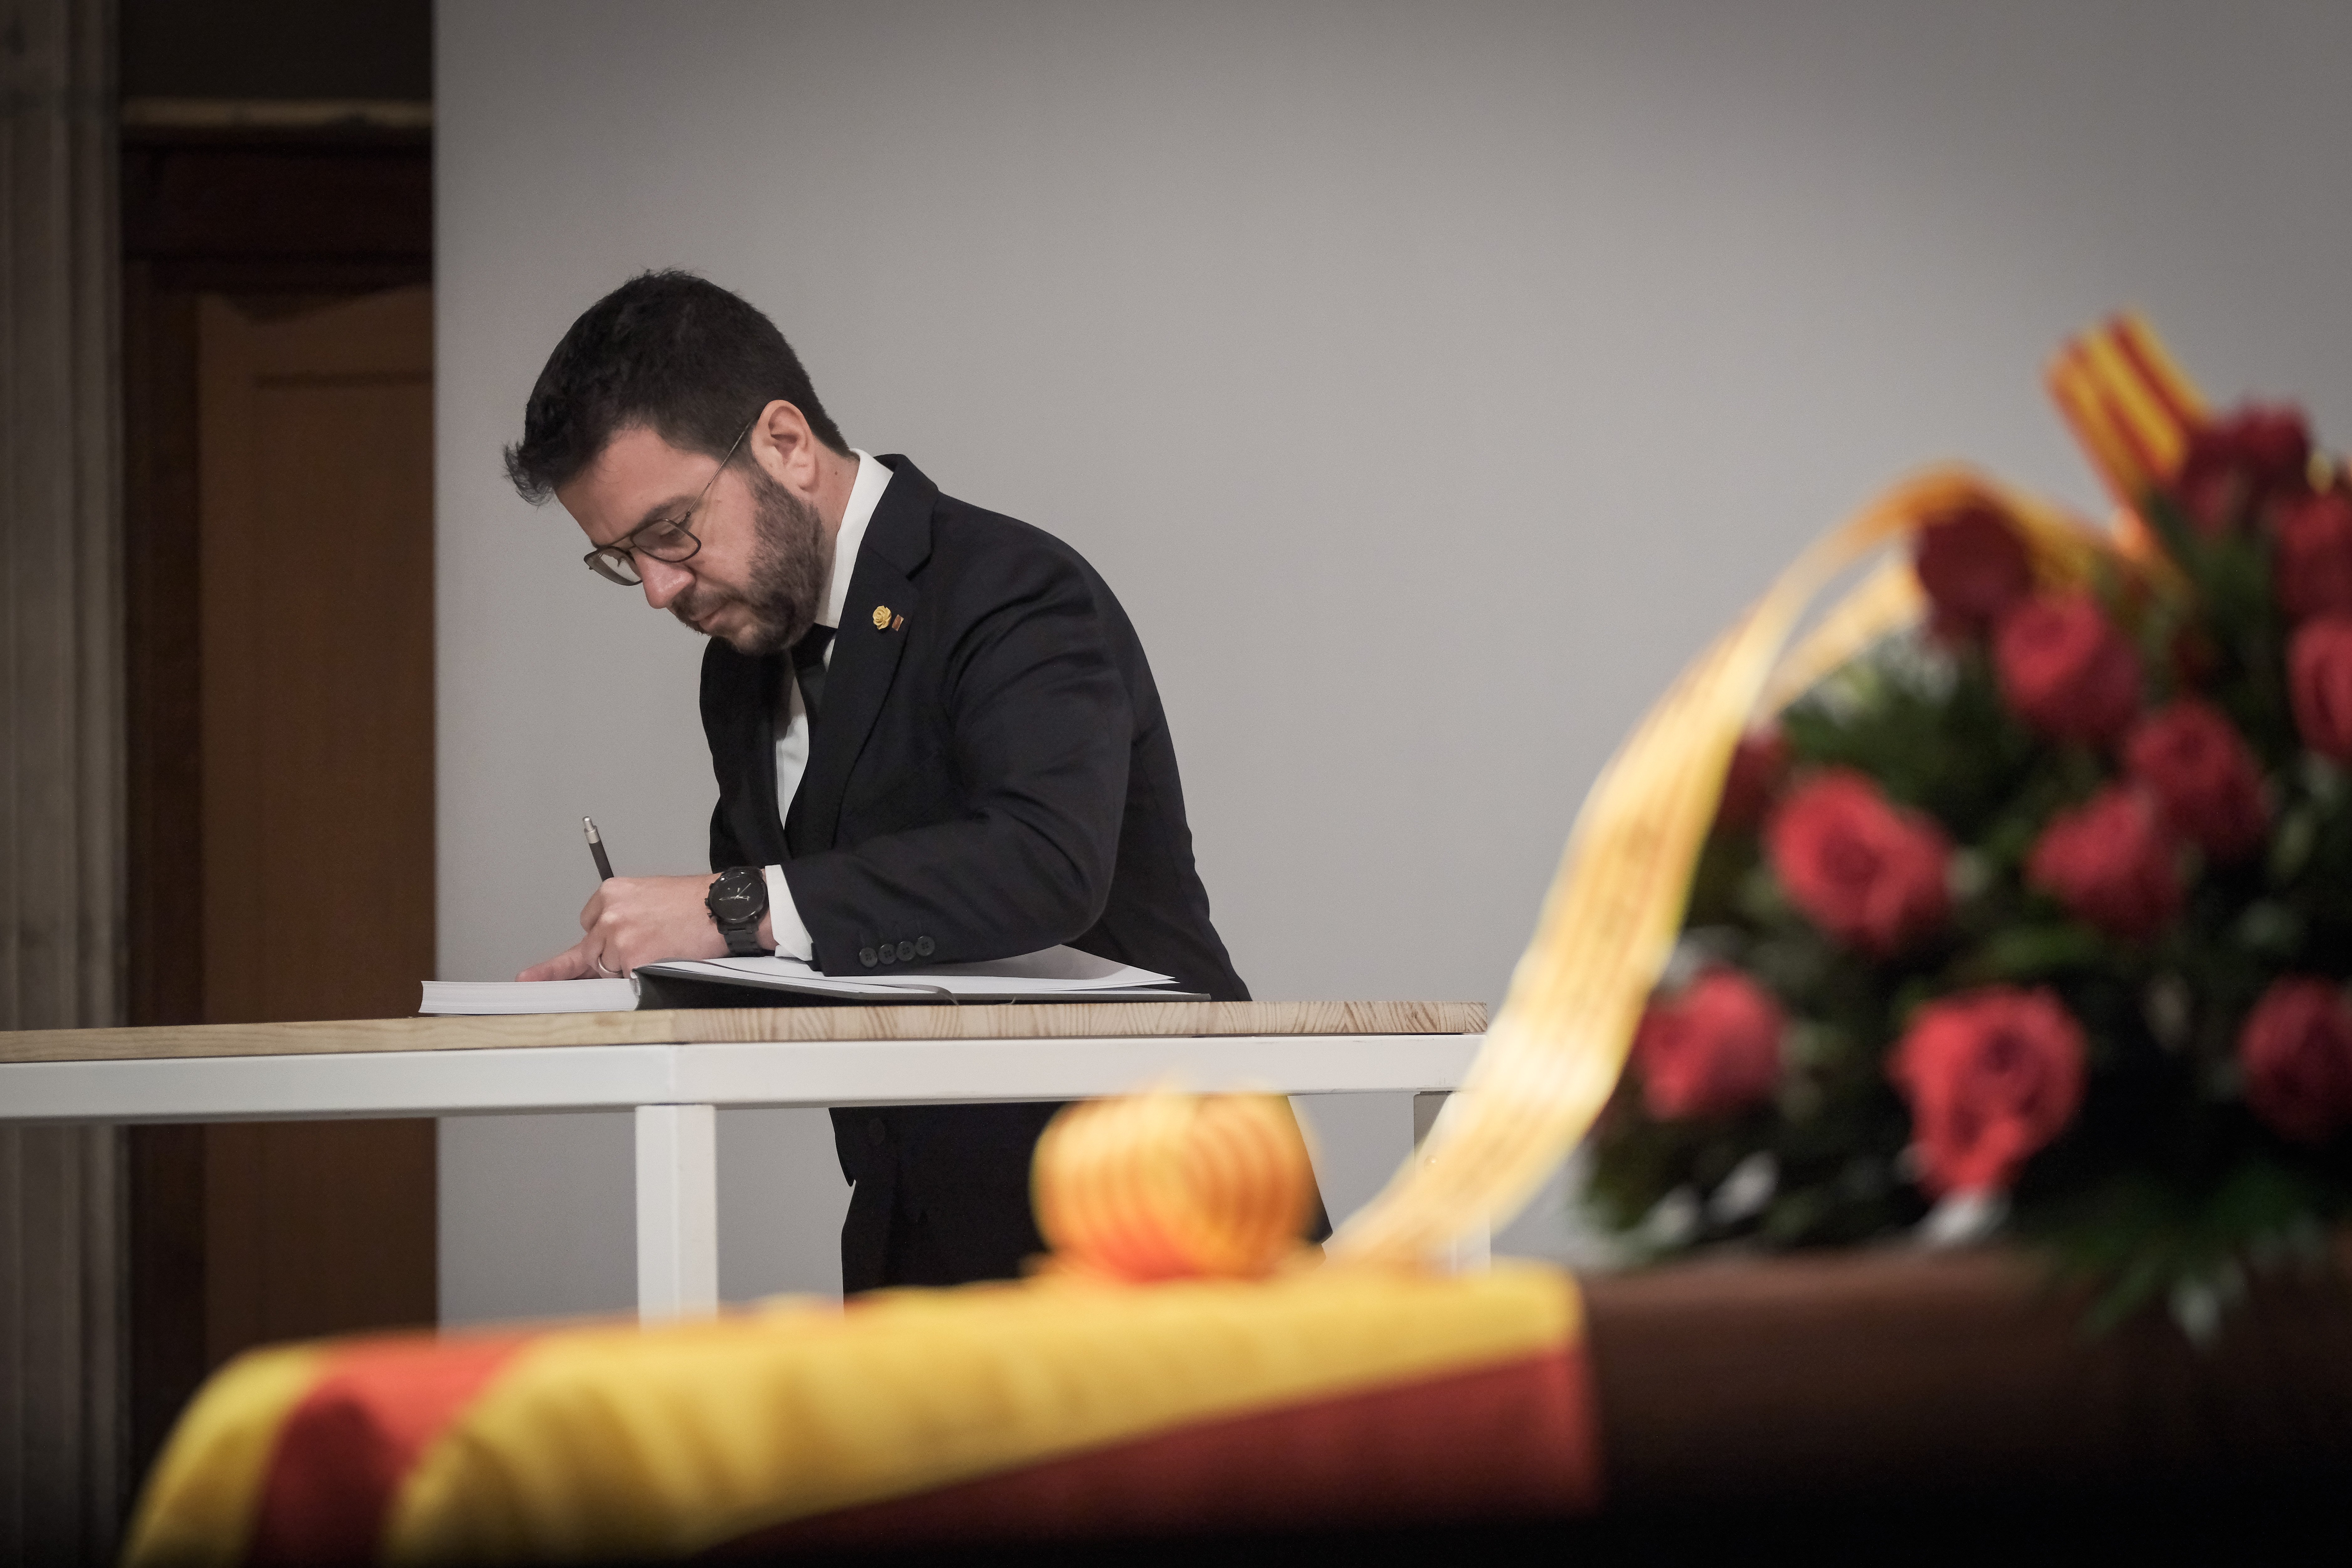 capilla ardiente escritor josep maria espinas palacio generalidad presidente pere aragones firma - carlos baglietto